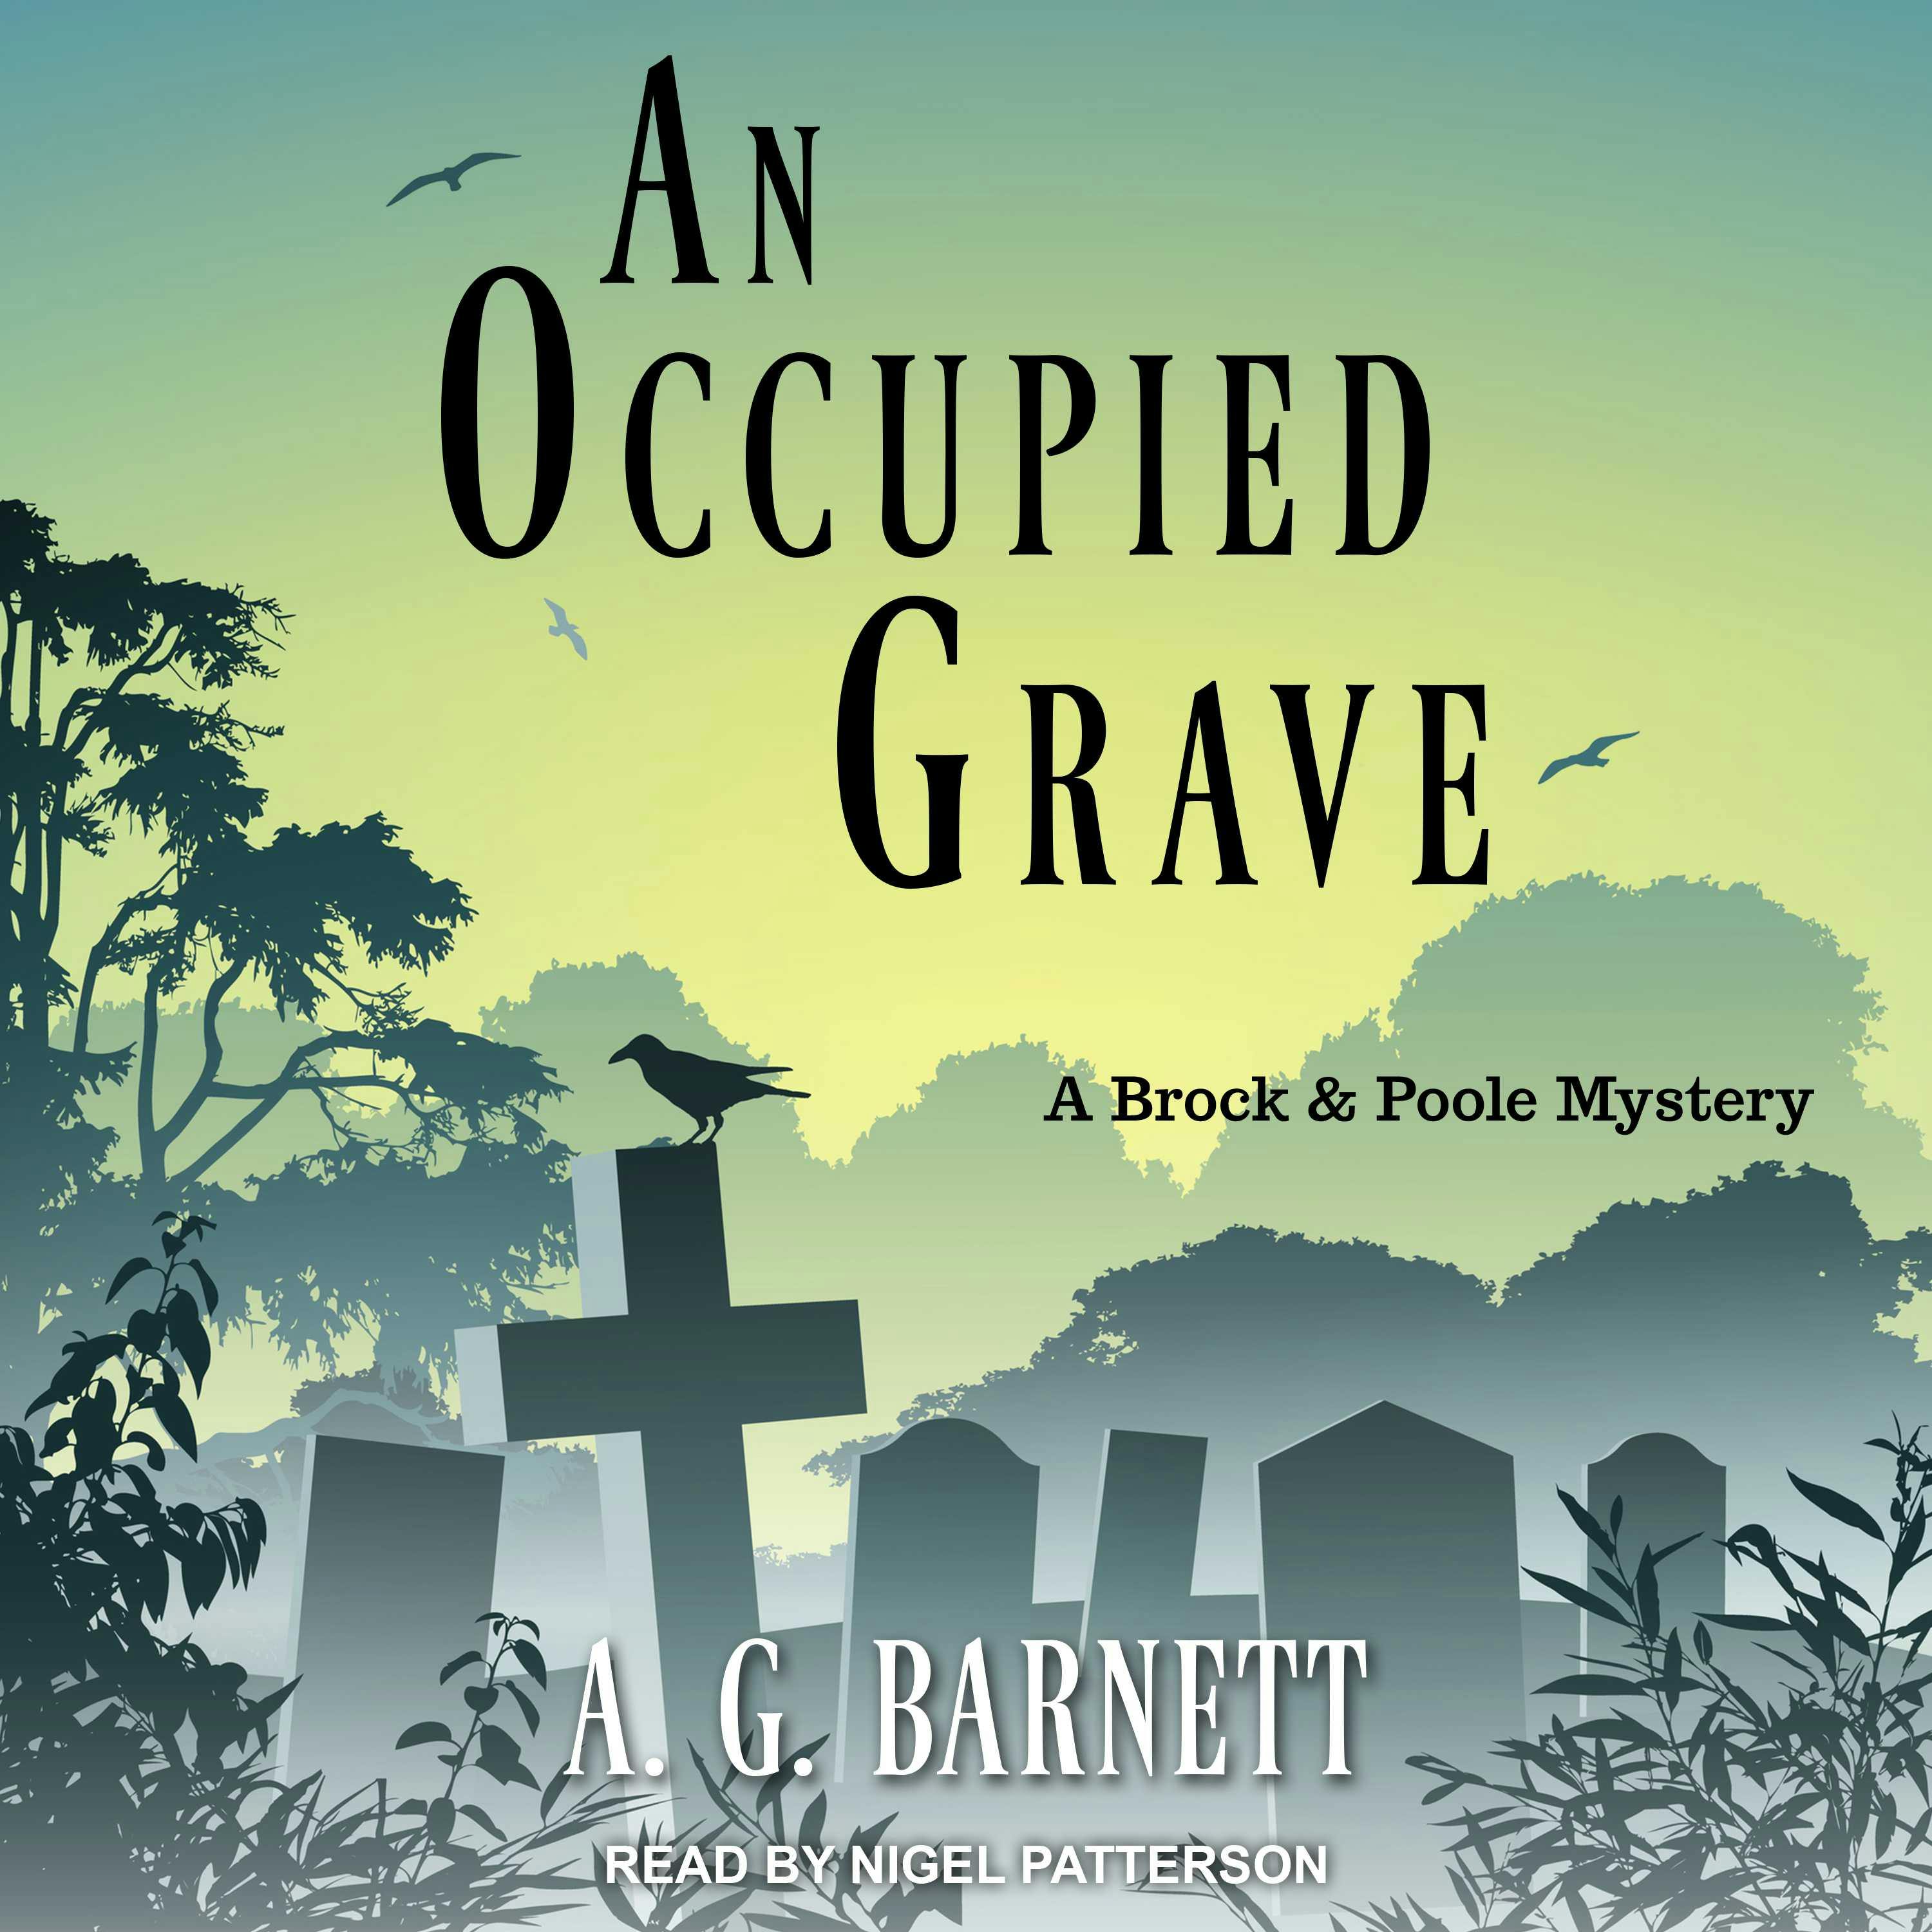 An Occupied Grave: A Brock & Poole Mystery - A. G. Barnett